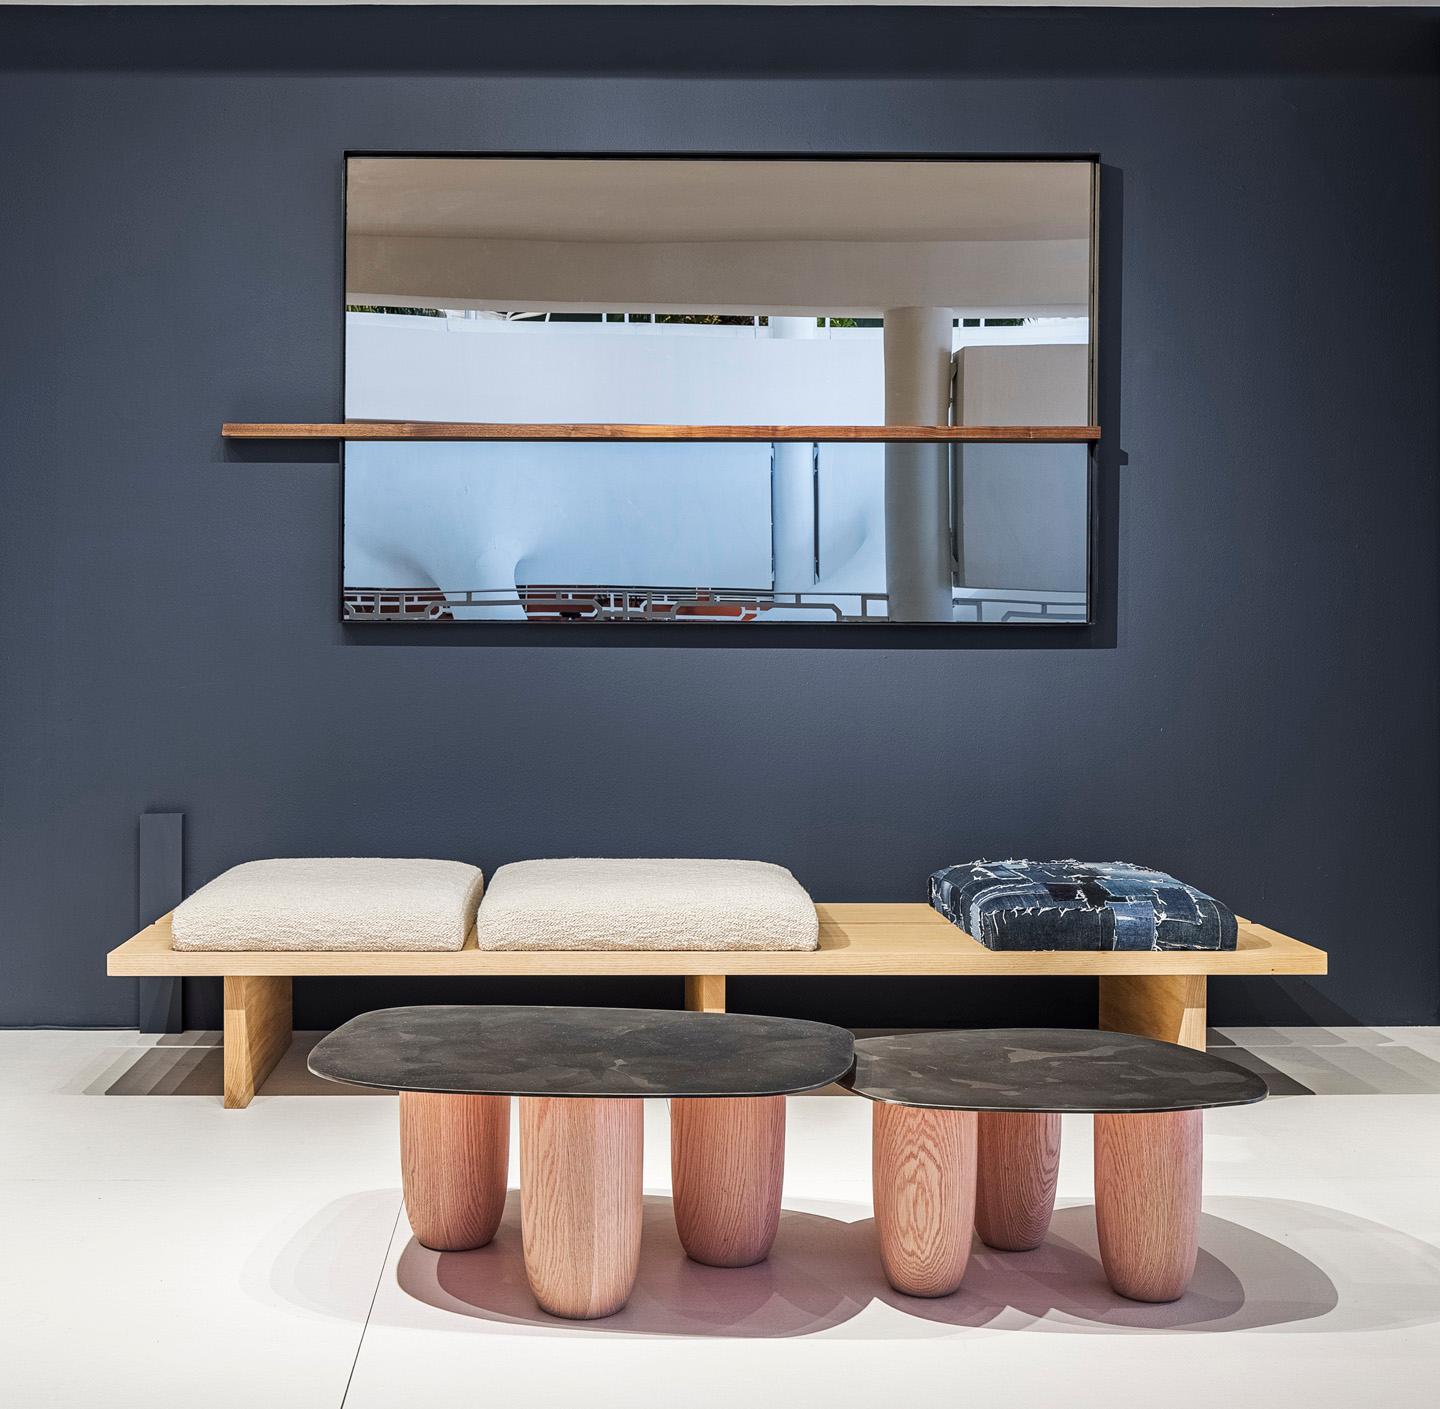 Unsere modernen Sumo-Tische wurden auf der Design Miami 2020 vorgestellt. Dieses Design wurde von der japanischen minimalistischen Ästhetik beeinflusst und sehr stark von dem verehrten Meister Isamu Noguchi inspiriert. Die Qualitäten des Designs